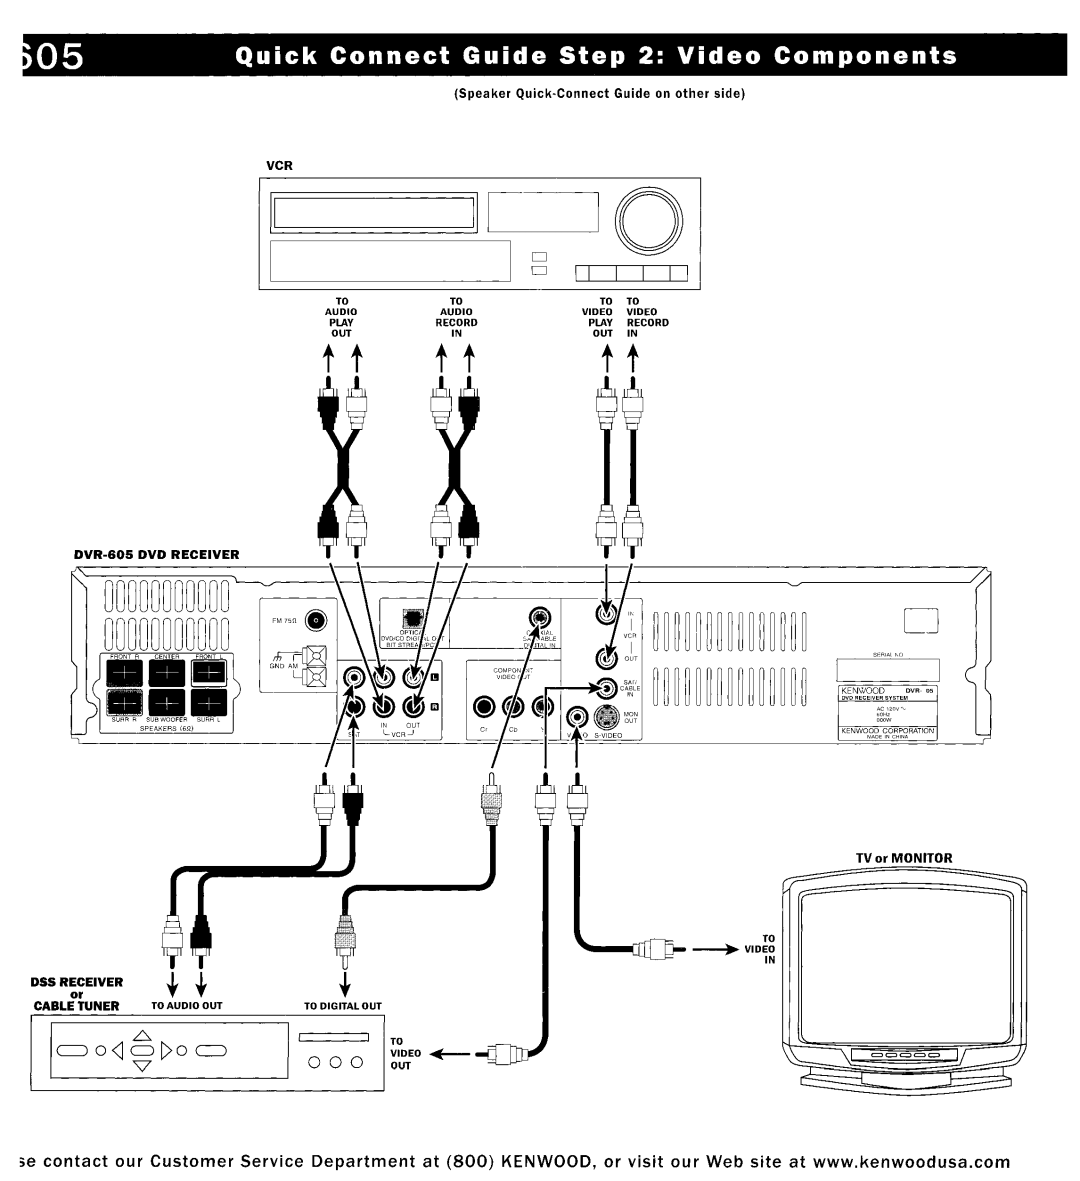 Kenwood DVR-6100K Speaker Quick-Connect Guide on other side, DVR-606 DVD RECEIVER, TV or MONITOR DSSREIIEIVER+ + 